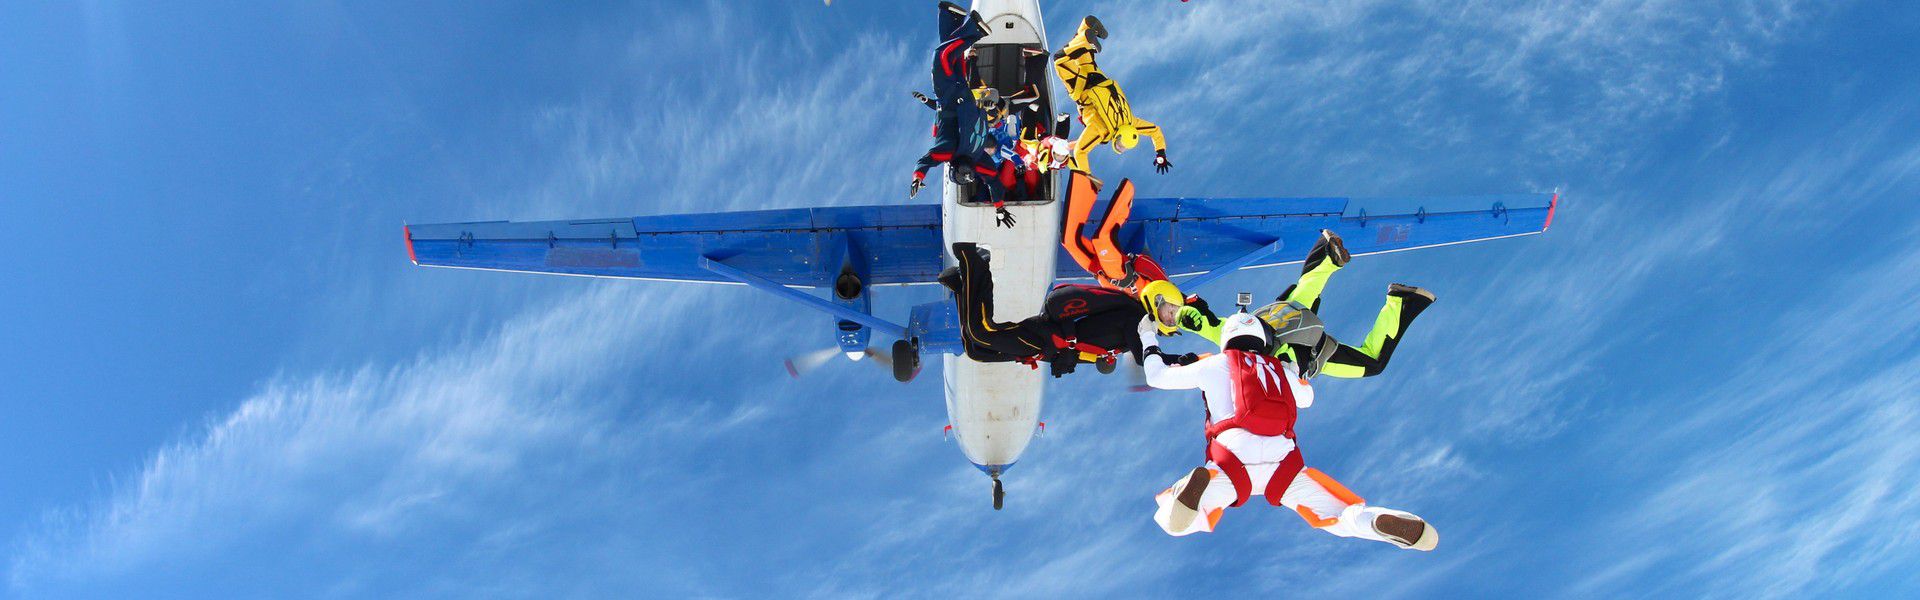 Le saut en parachute est une activité qui consiste à sauter d’un avion en étant équipé d’un parachute. Le but est de sauter dans le vide et d’activer le parachute en tombant. Une activité captivante pour ceux qui désirent faire des expériences sensationnelles.